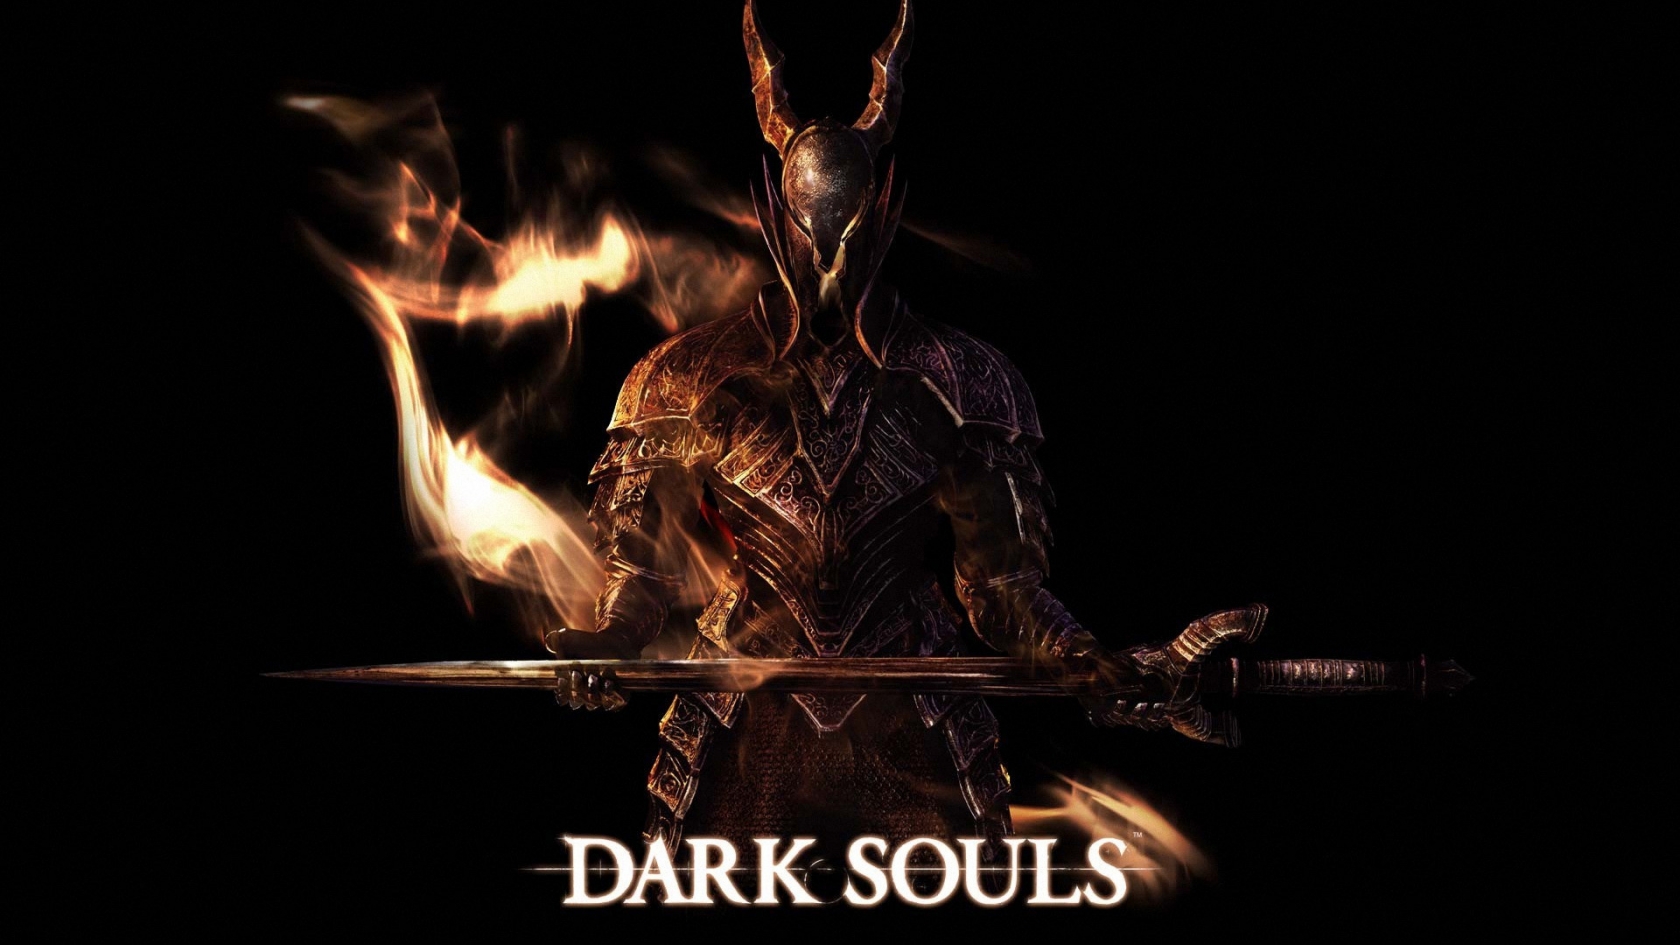 Dark Souls Art for 1680 x 945 HDTV resolution